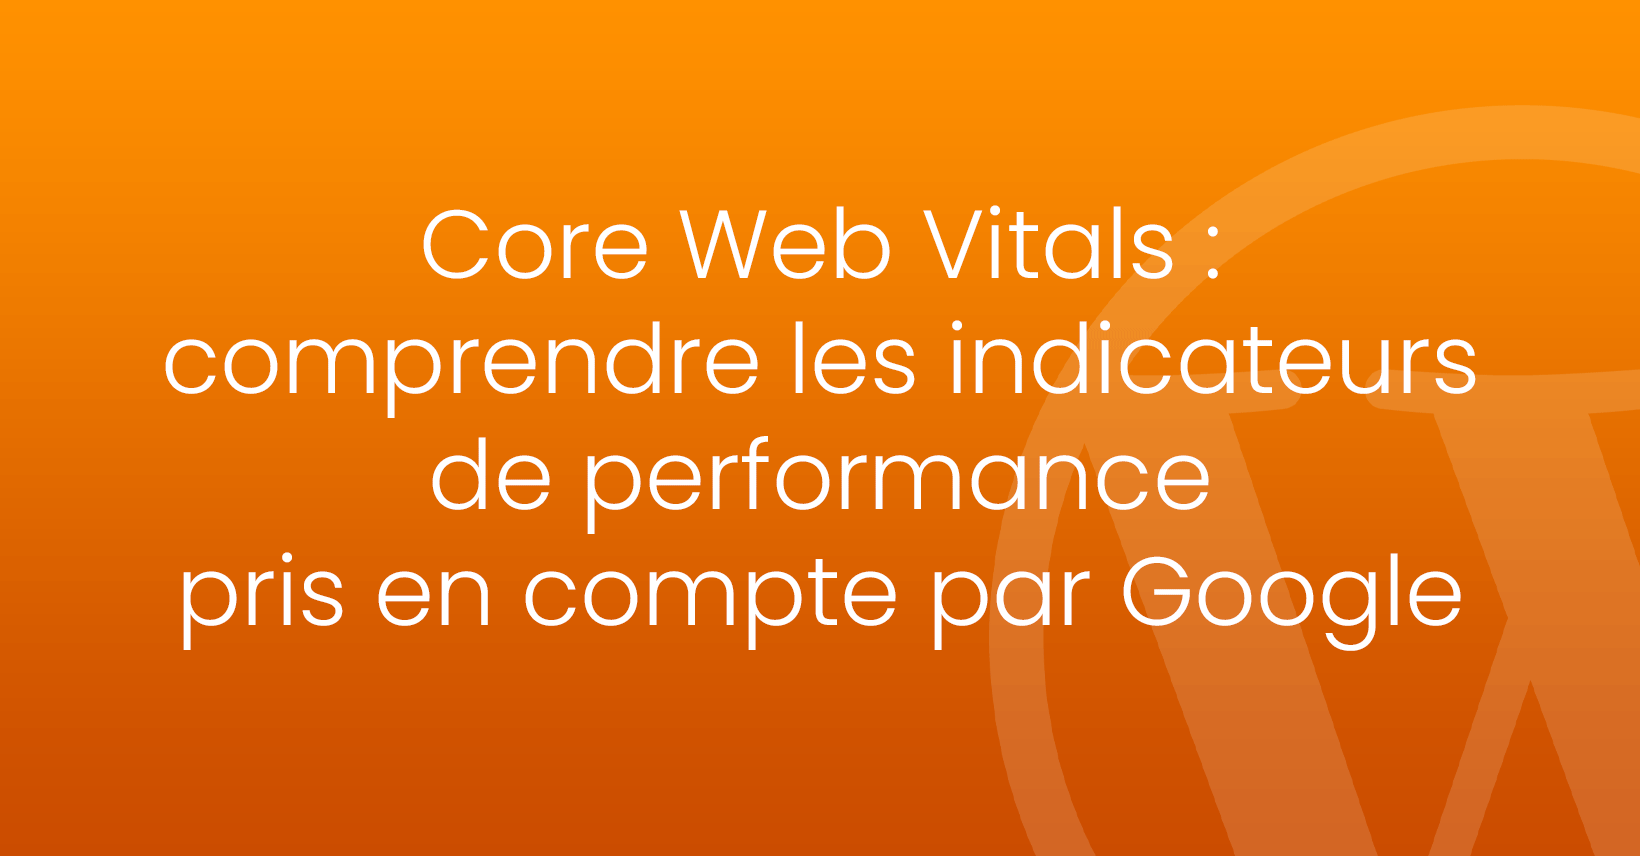 Core Web Vitals : Comprendre les indicateurs de performance pris en compte par google